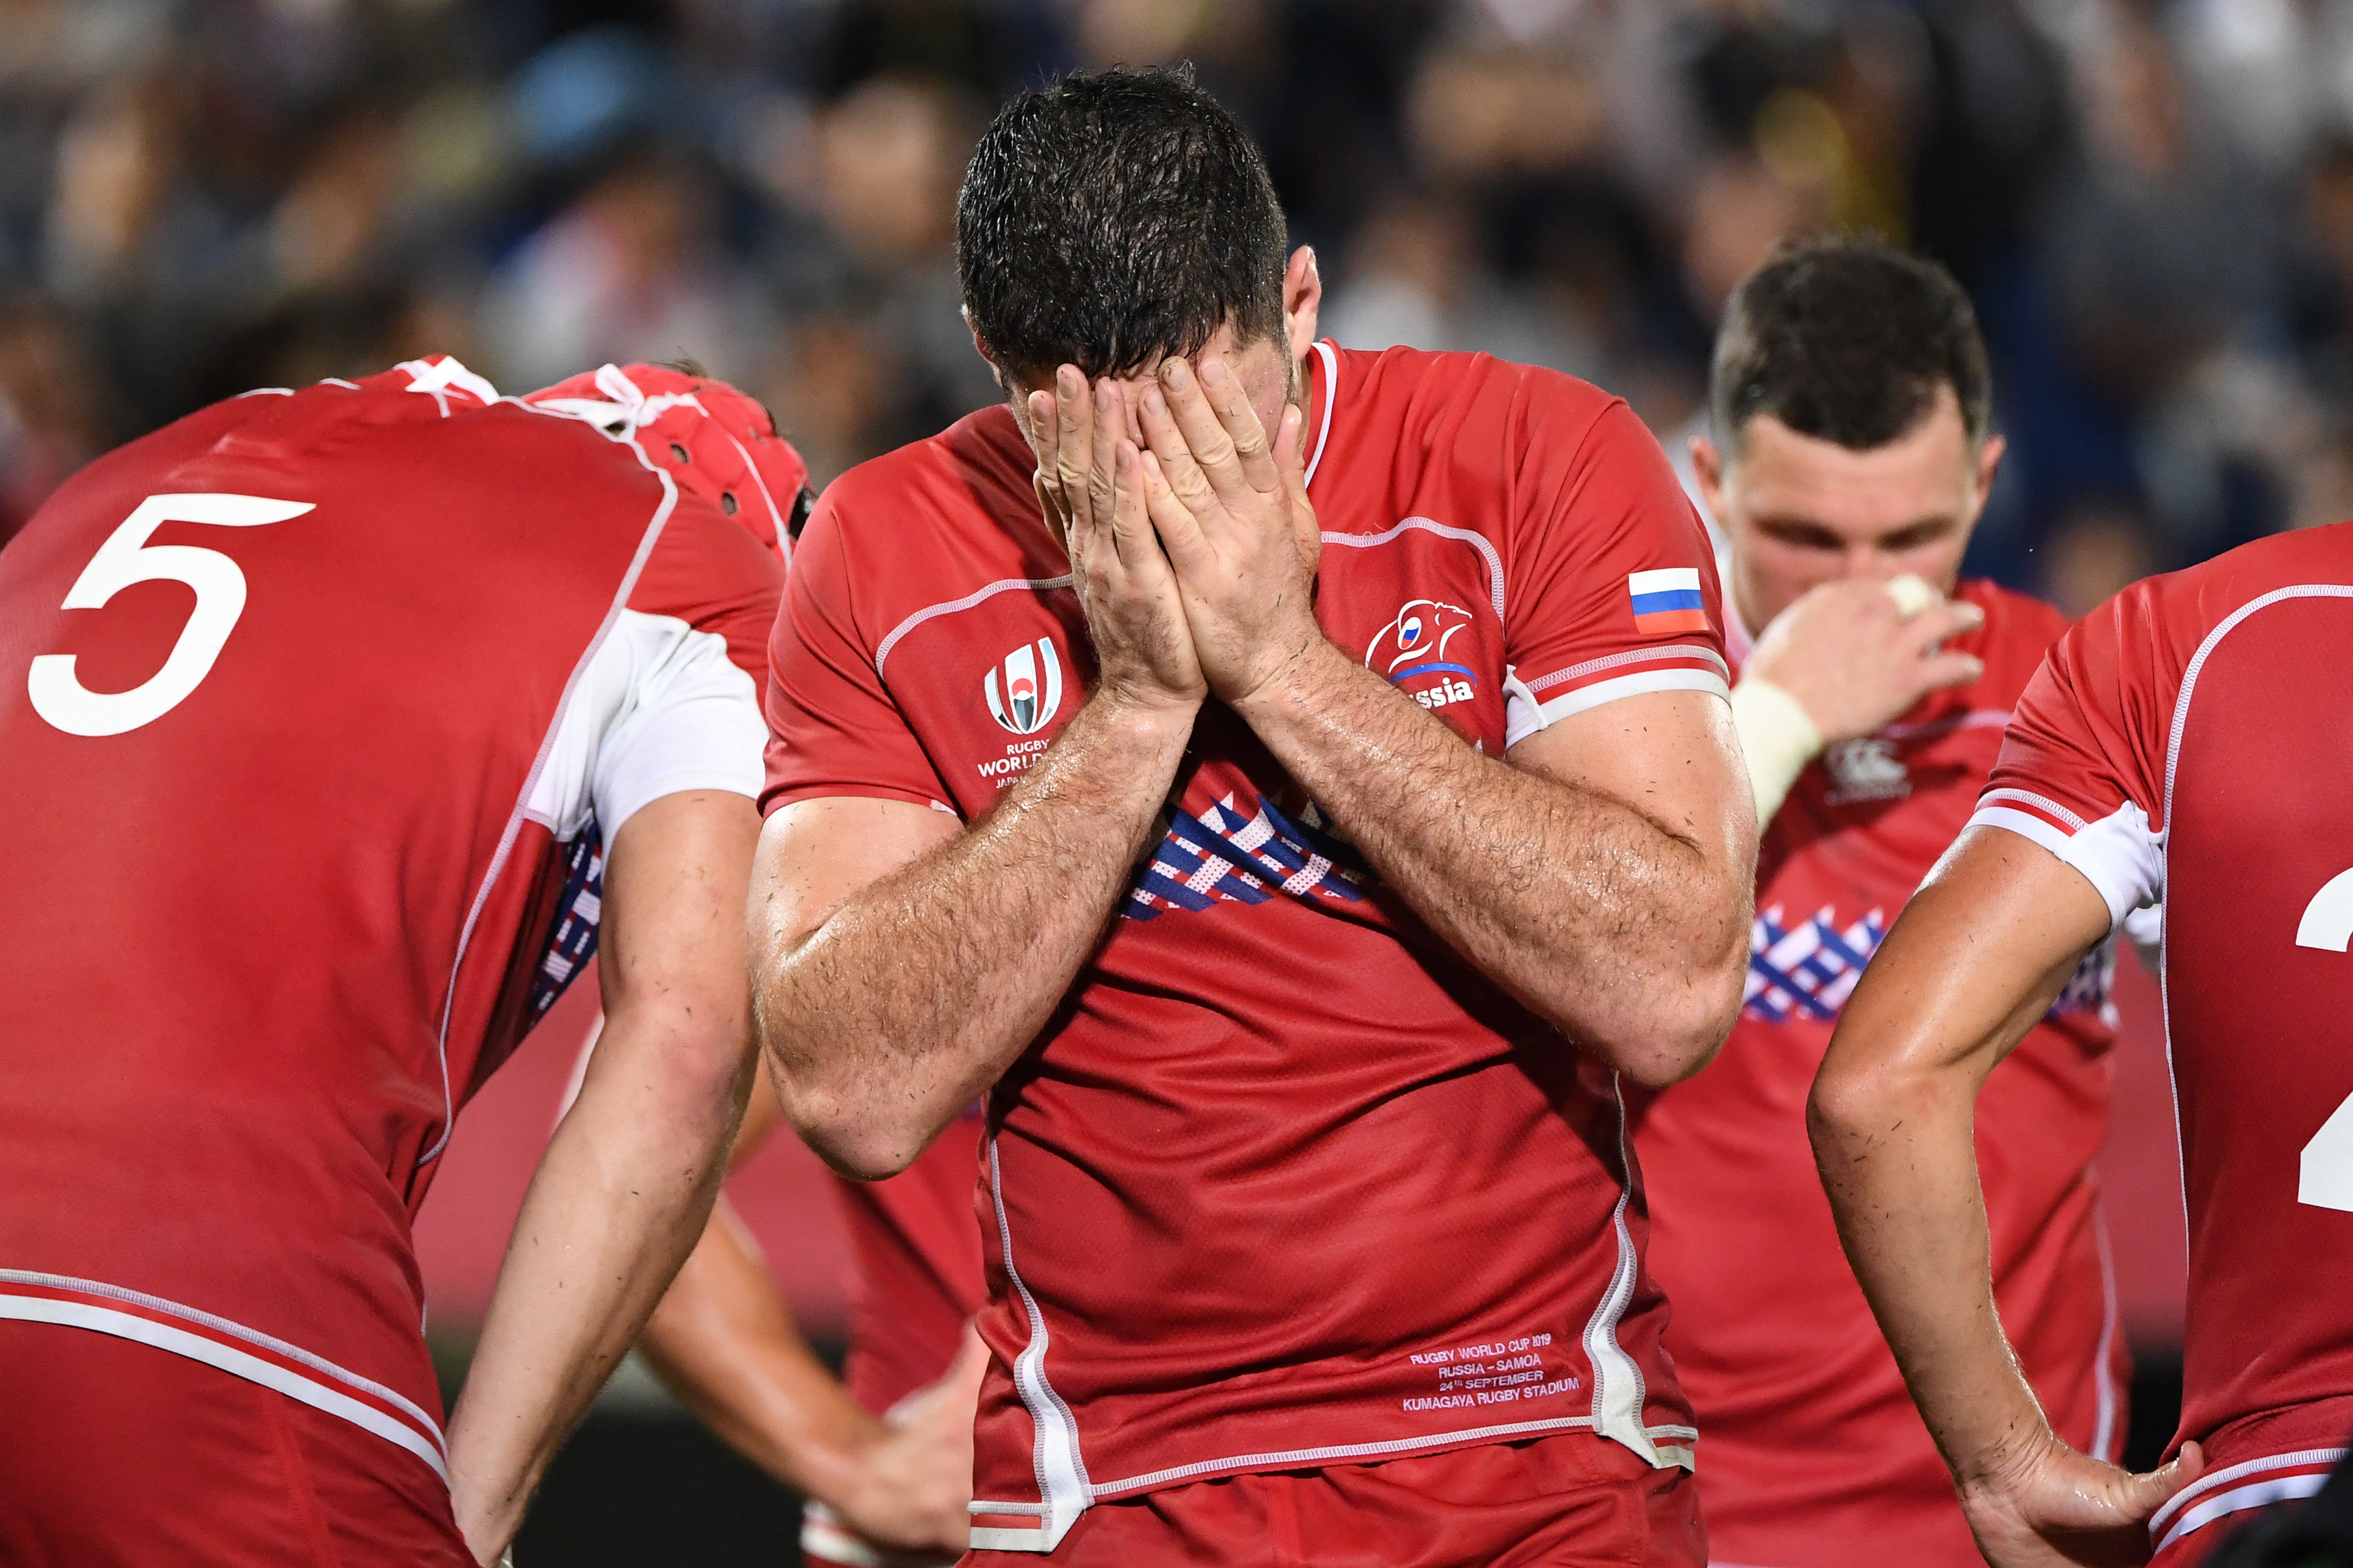 El ala de Rusia, Tagir Gadzhiev, reacciona después de perder el partido del grupo A de la Copa Mundial de Rugby de Japón 2019 ante Samoa en el estadio de rugby de Kumagaya en Kumagaya el 24 de septiembre de 2019. (Foto de William WEST / AFP)